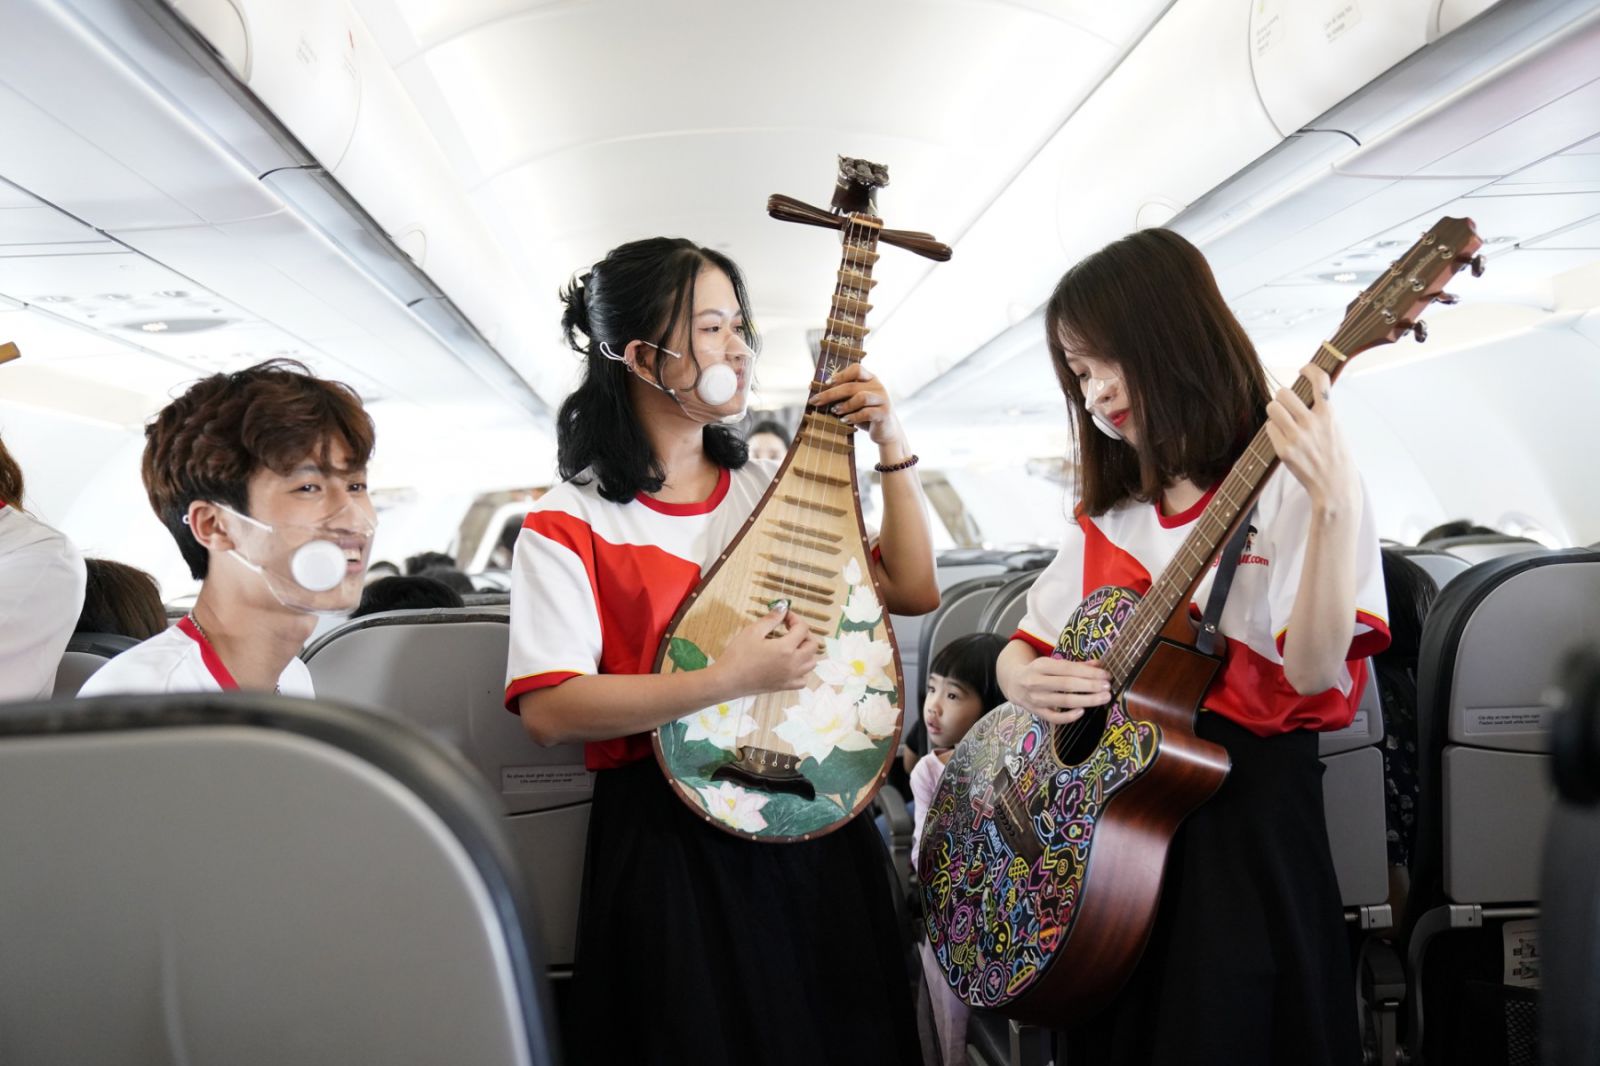 Trong trang phục mang màu cờ đỏ, sao vàng, các nghệ sĩ trẻ Vietjet đã dành tặng khách hàng các ca khúc trẻ trung ca ngợi thiên nhiên, đất nước, con người bằng các nhạc cụ truyền thống của dân tộc.